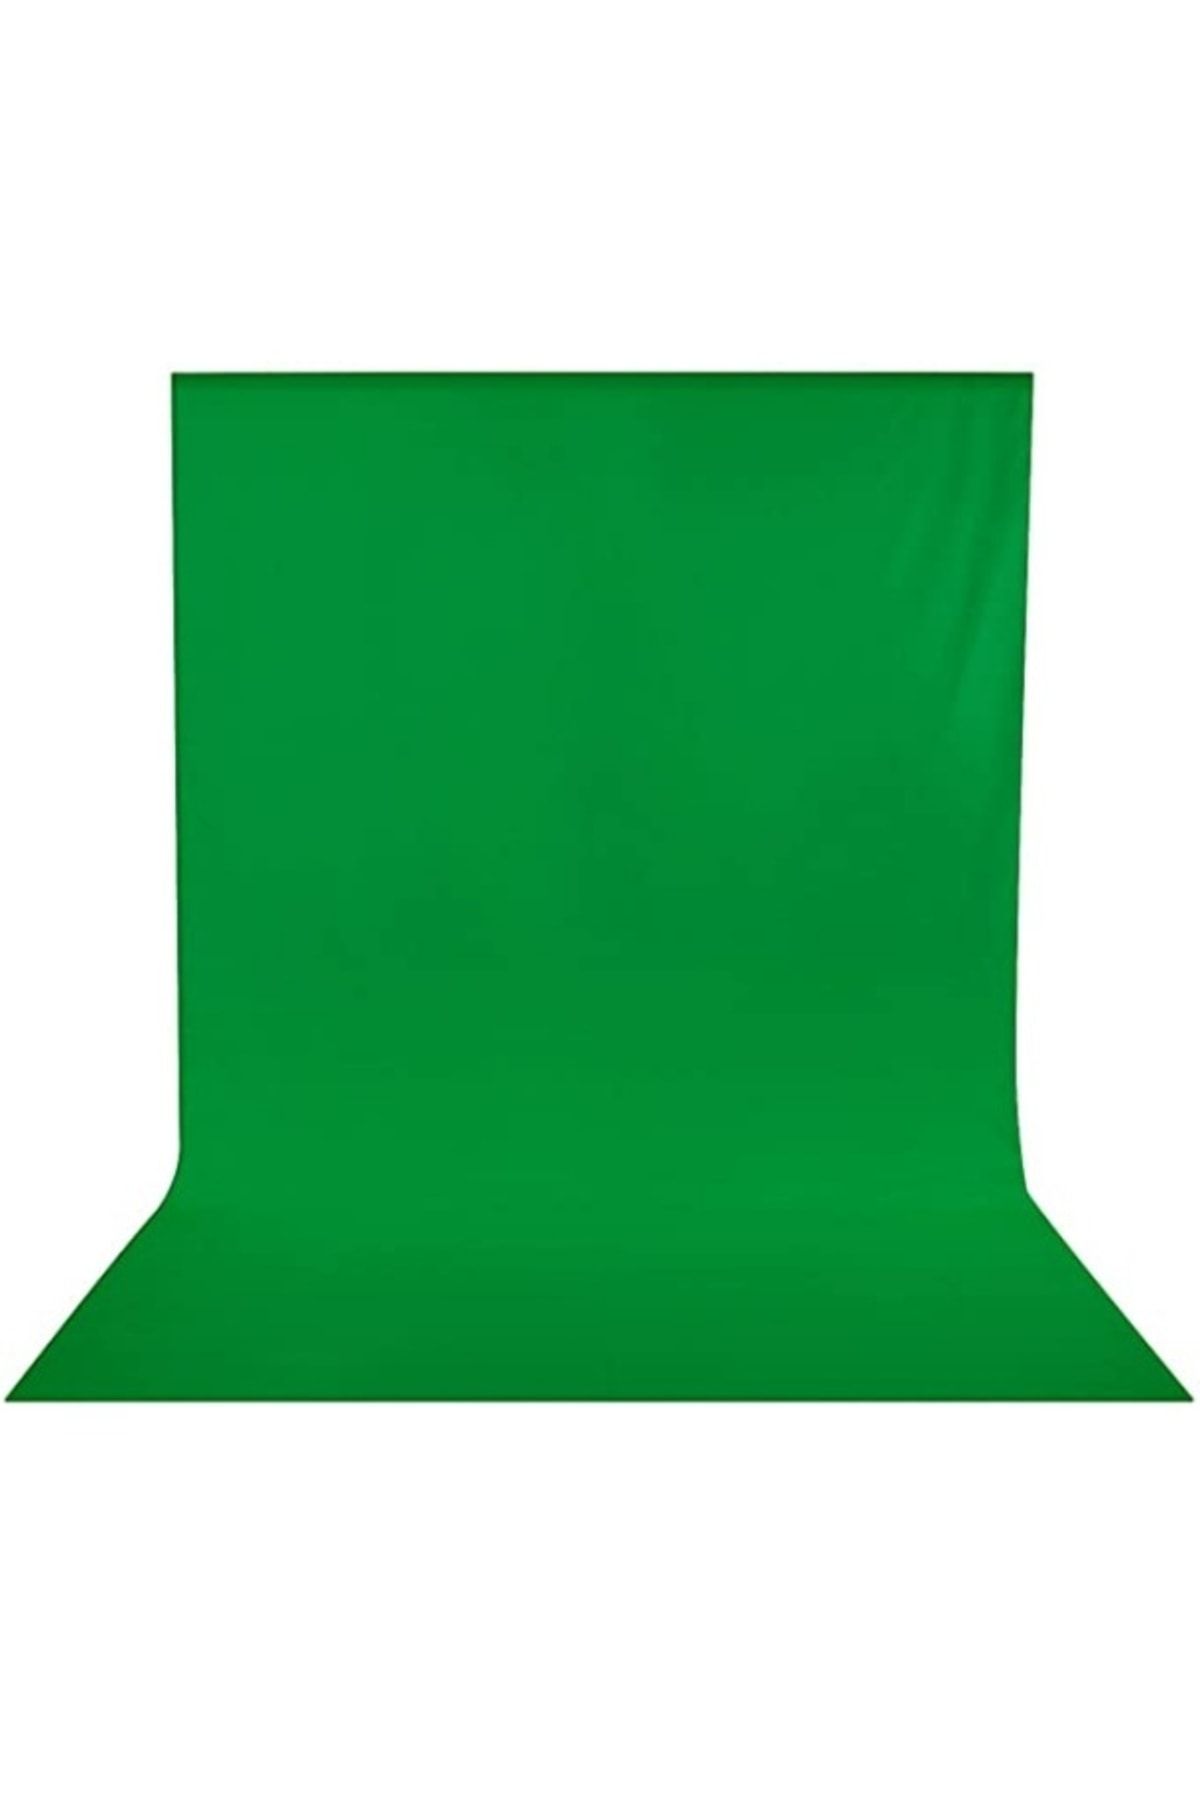 ADA GREENBOX 1.5x2 m Chromakey-Green Screen- Greenbox Yeşil Fon Perde